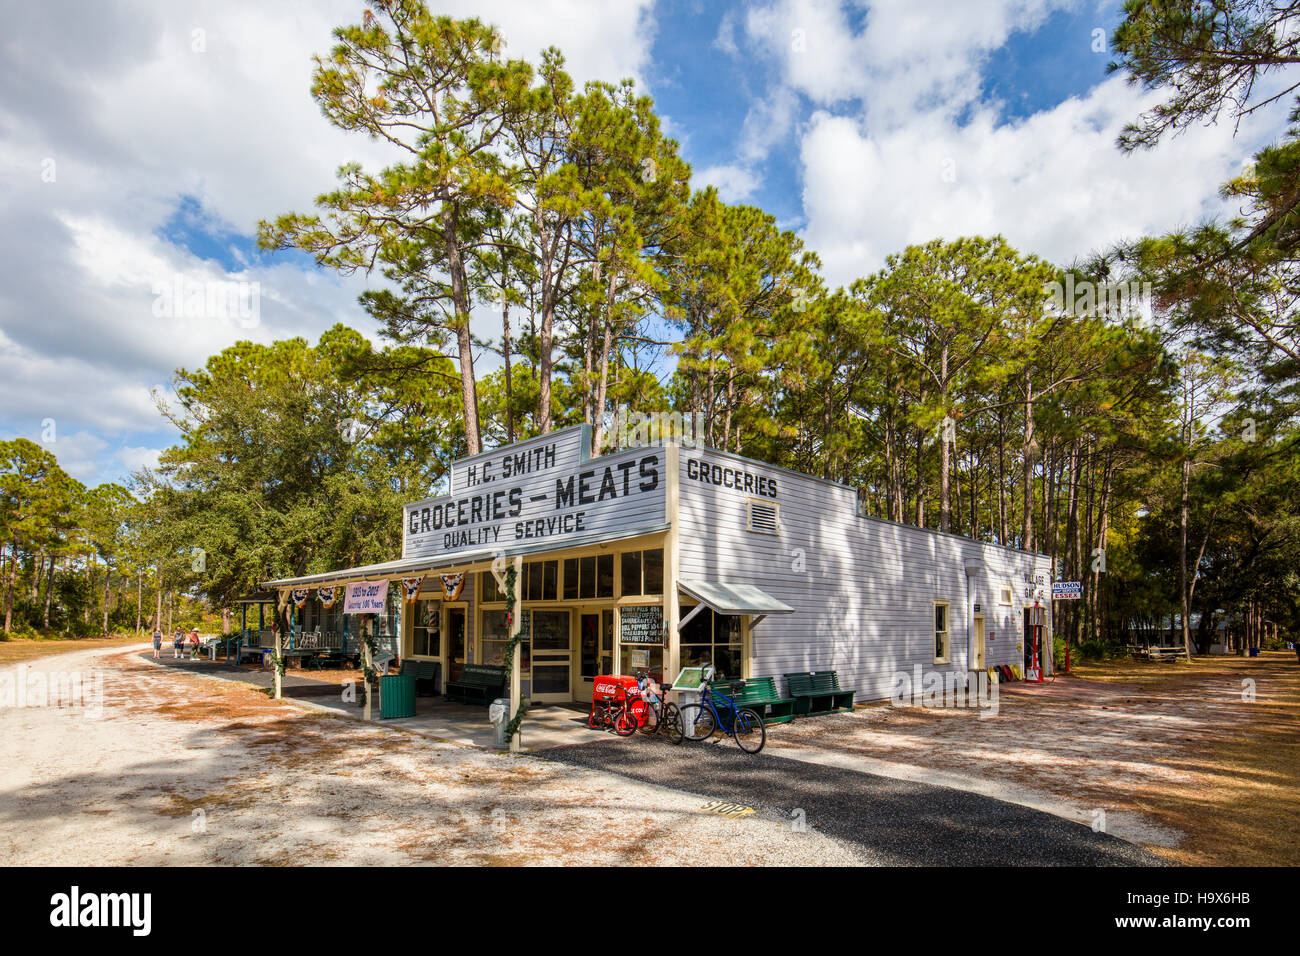 H C Smith magasin général à la vieille ville historique de Heritage Village de Pinellas Comté de Largo en Floride Banque D'Images